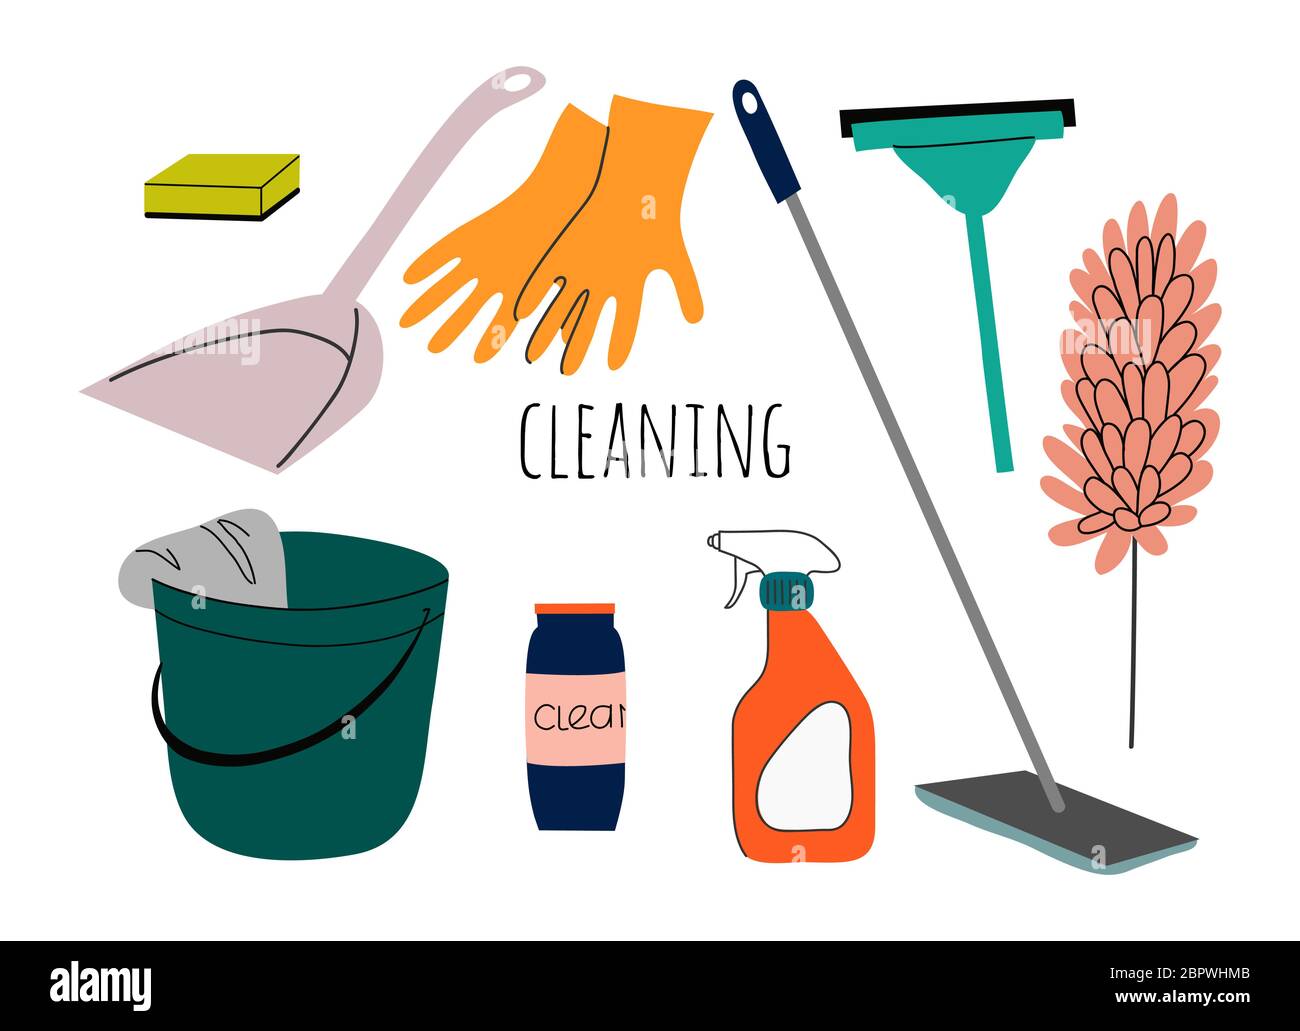 Illustrazione piatta del servizio di pulizia. Set di oggetti isolati per servizi di pulizia di case con varie attrezzature e utensili di pulizia. Illustrazione Vettoriale